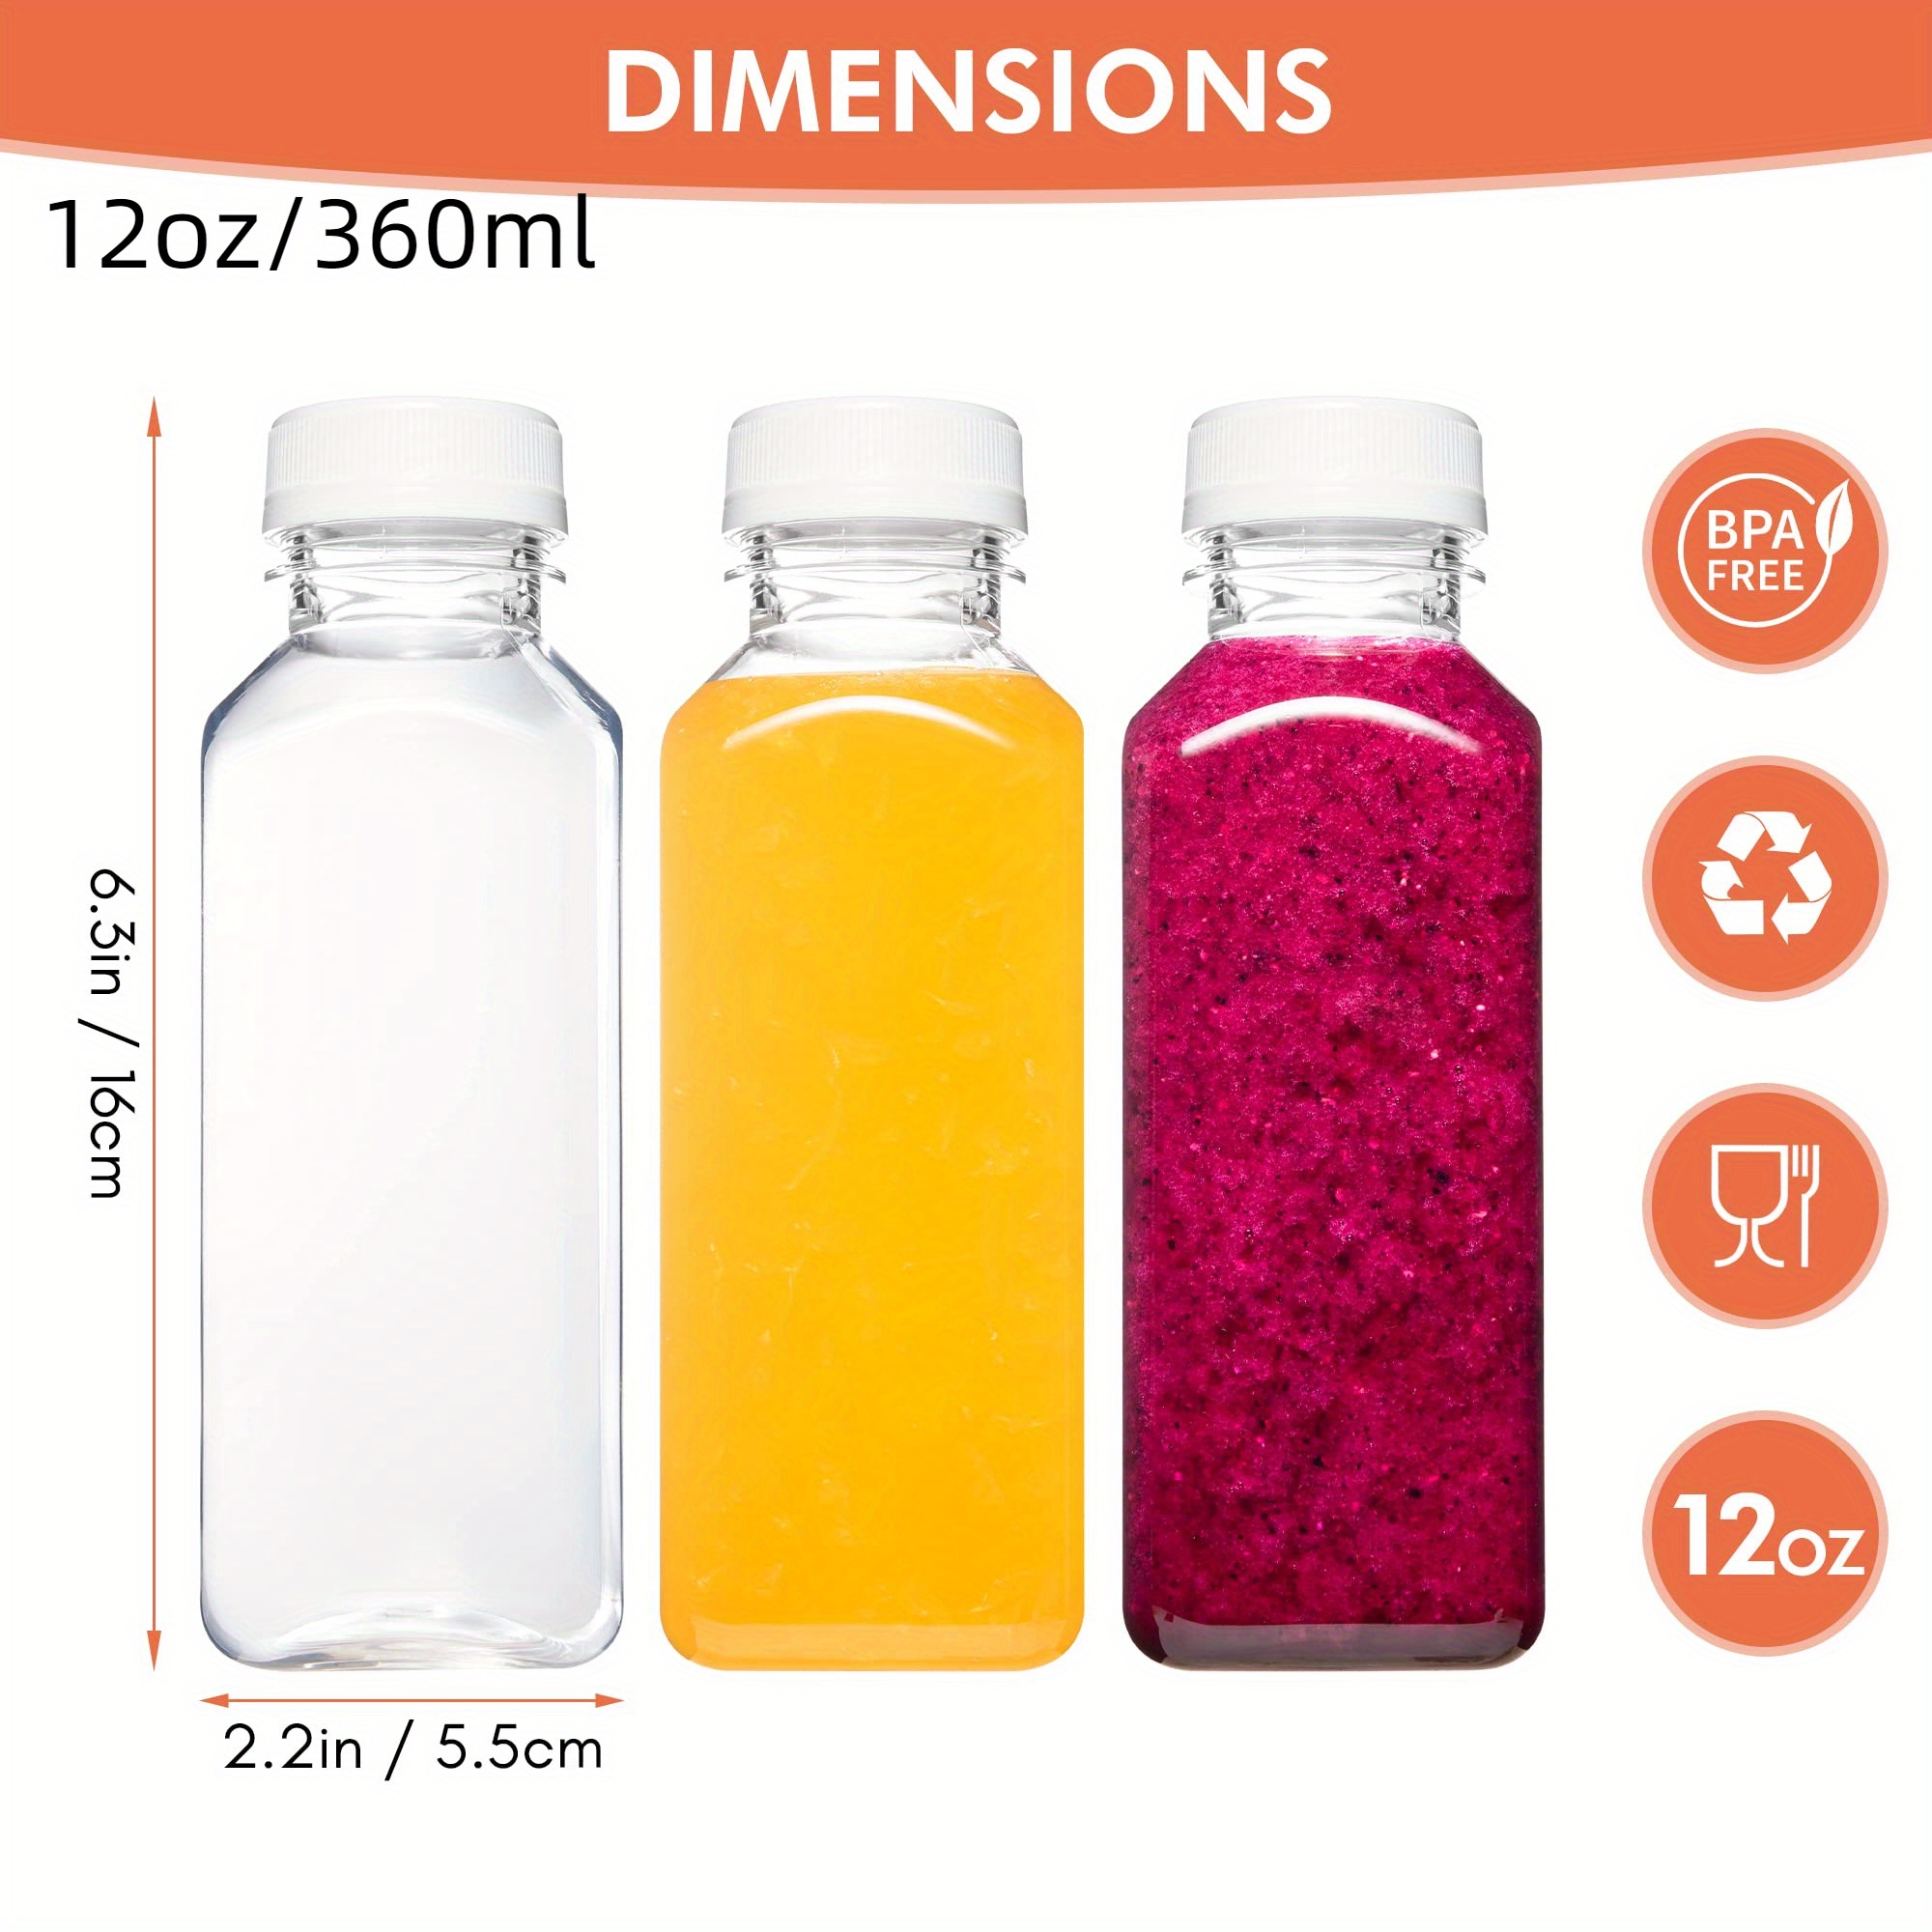  [ 8 Pack ] 16 OZ Glass Juicing Bottles w Airtight Lids